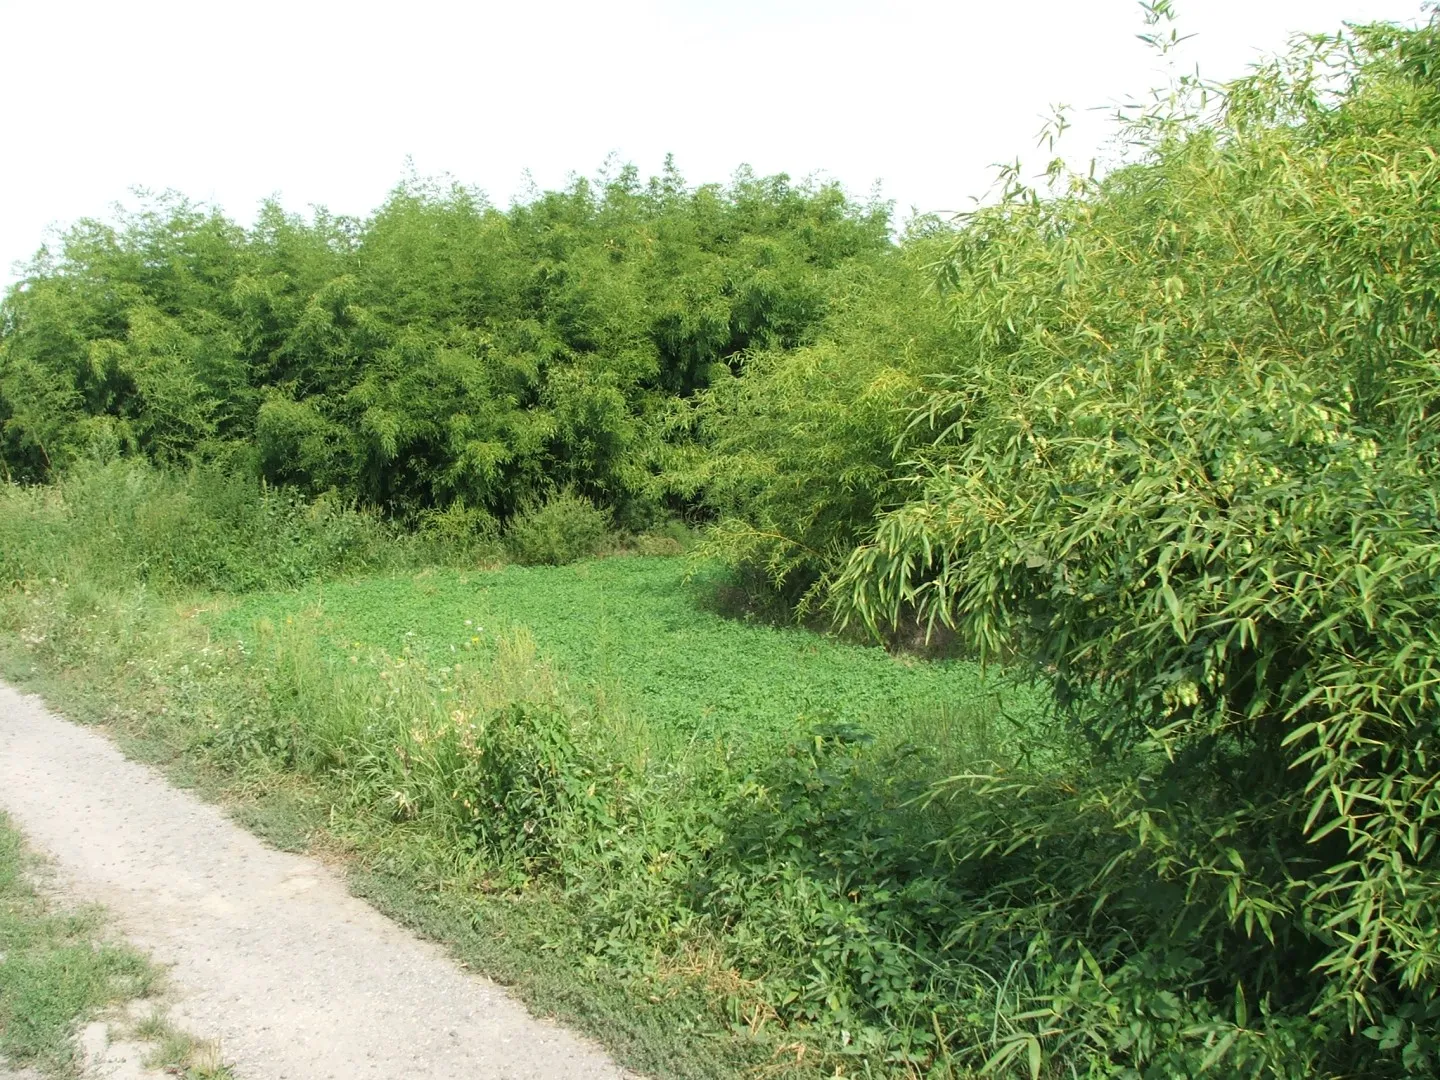 Harom Phyll. viridiglaucescens ültetvény, betonútról megközelíthető 2016